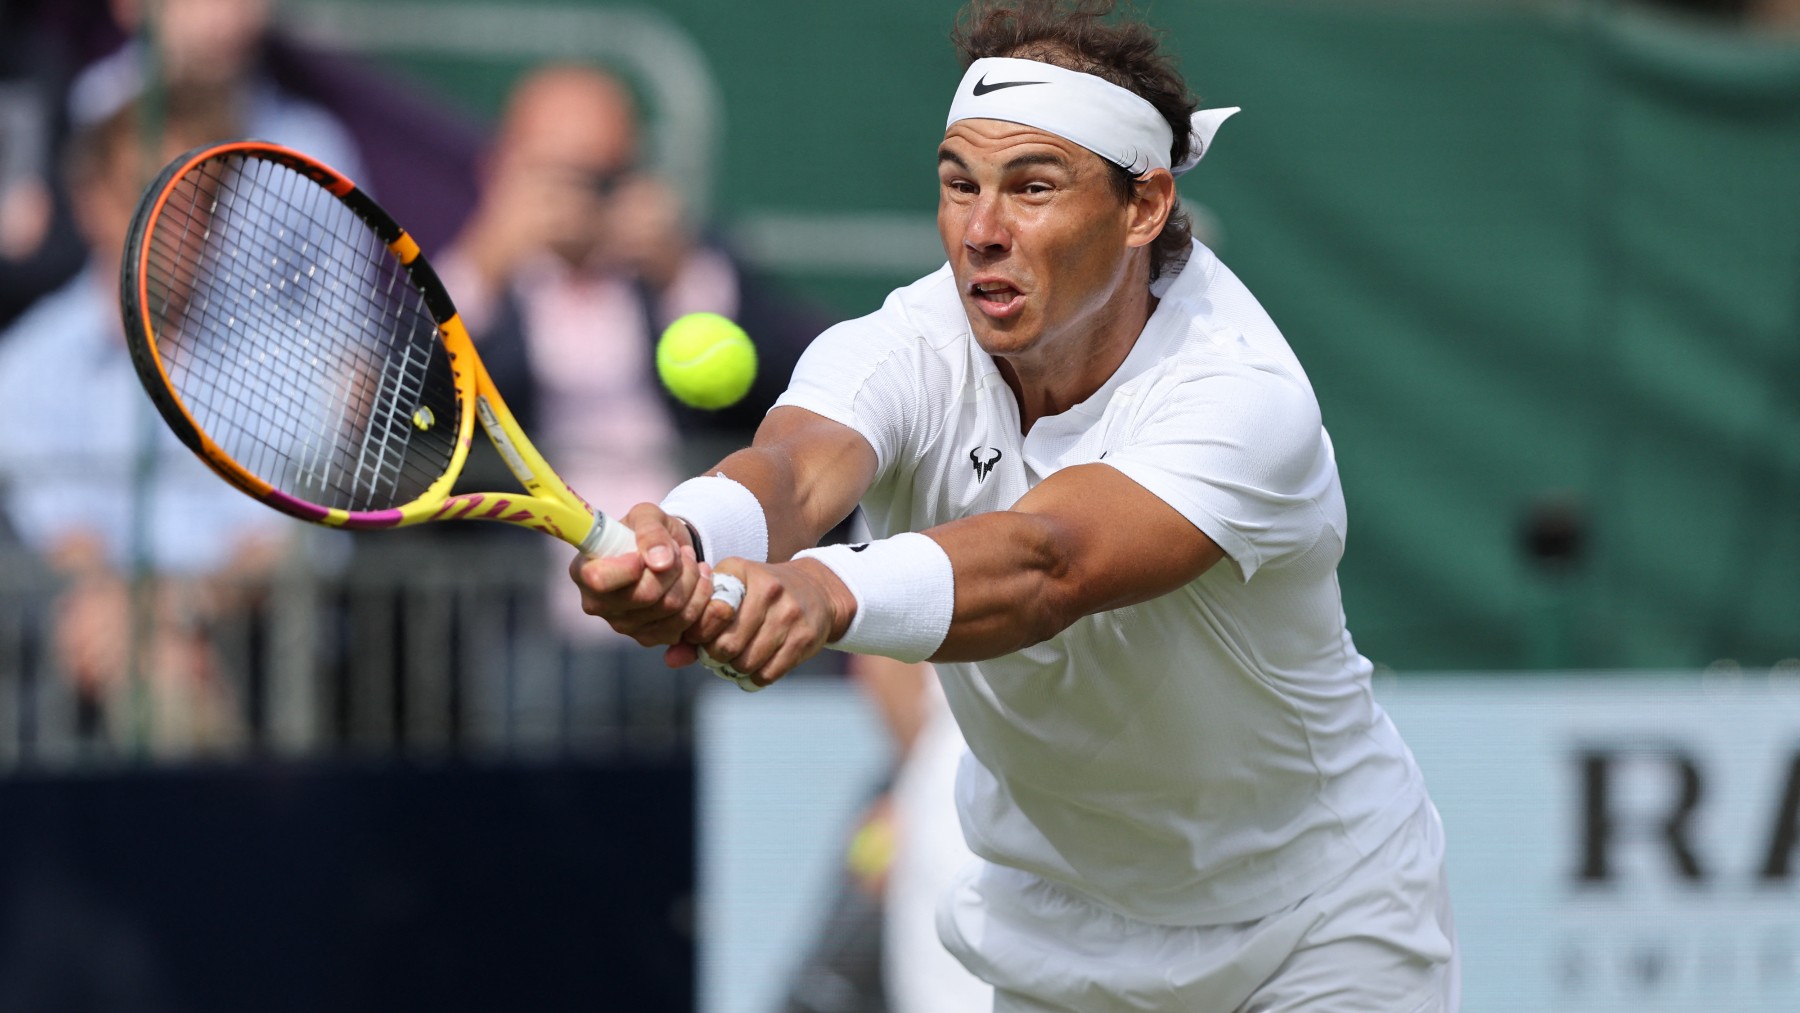 Rafa Nadal – Cerúndolo hoy en vivo online | Partido de Wimbledon 2022 en directo.